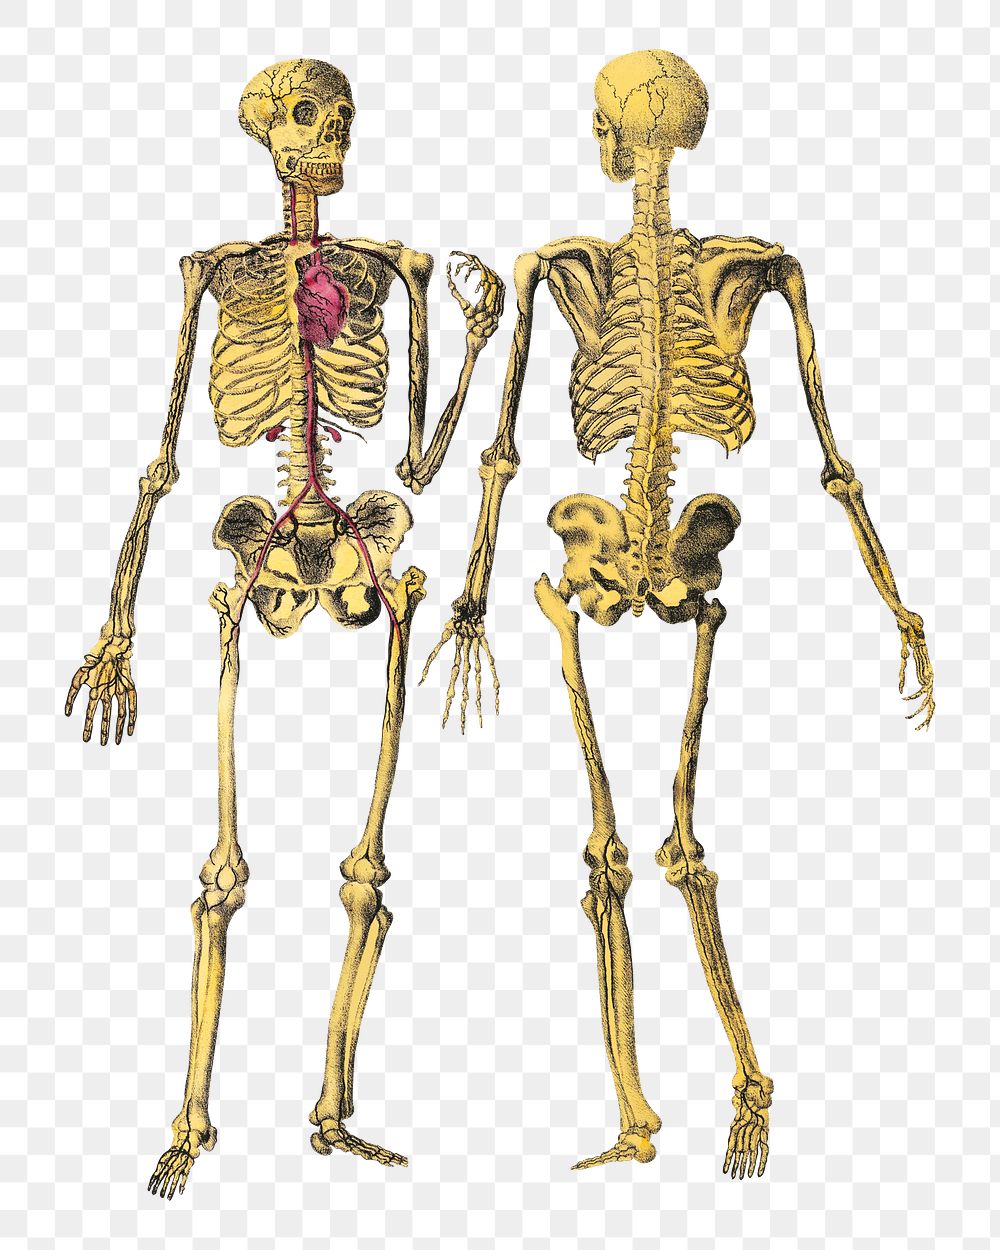 Dr. Parker's png human skeleton, vintage illustration on transparent background.  Remastered by rawpixel